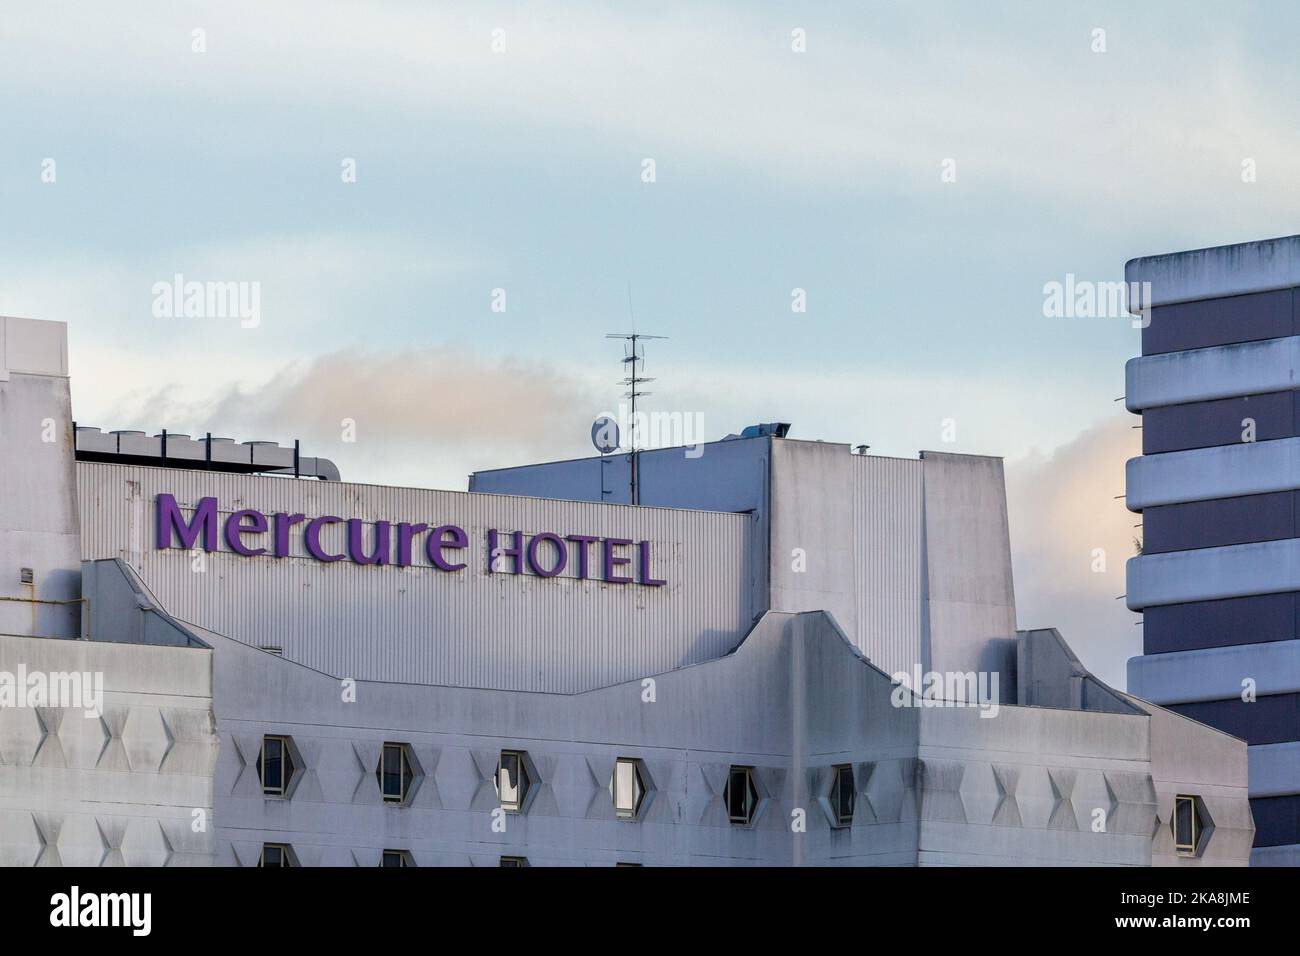 Immagine di un cartello Mercure Hotel sul loro hotel principale a Bordeaux, Francia. Mercure è un marchio di fascia media di hotel di categoria compresa tra 3 e 4 stelle Foto Stock